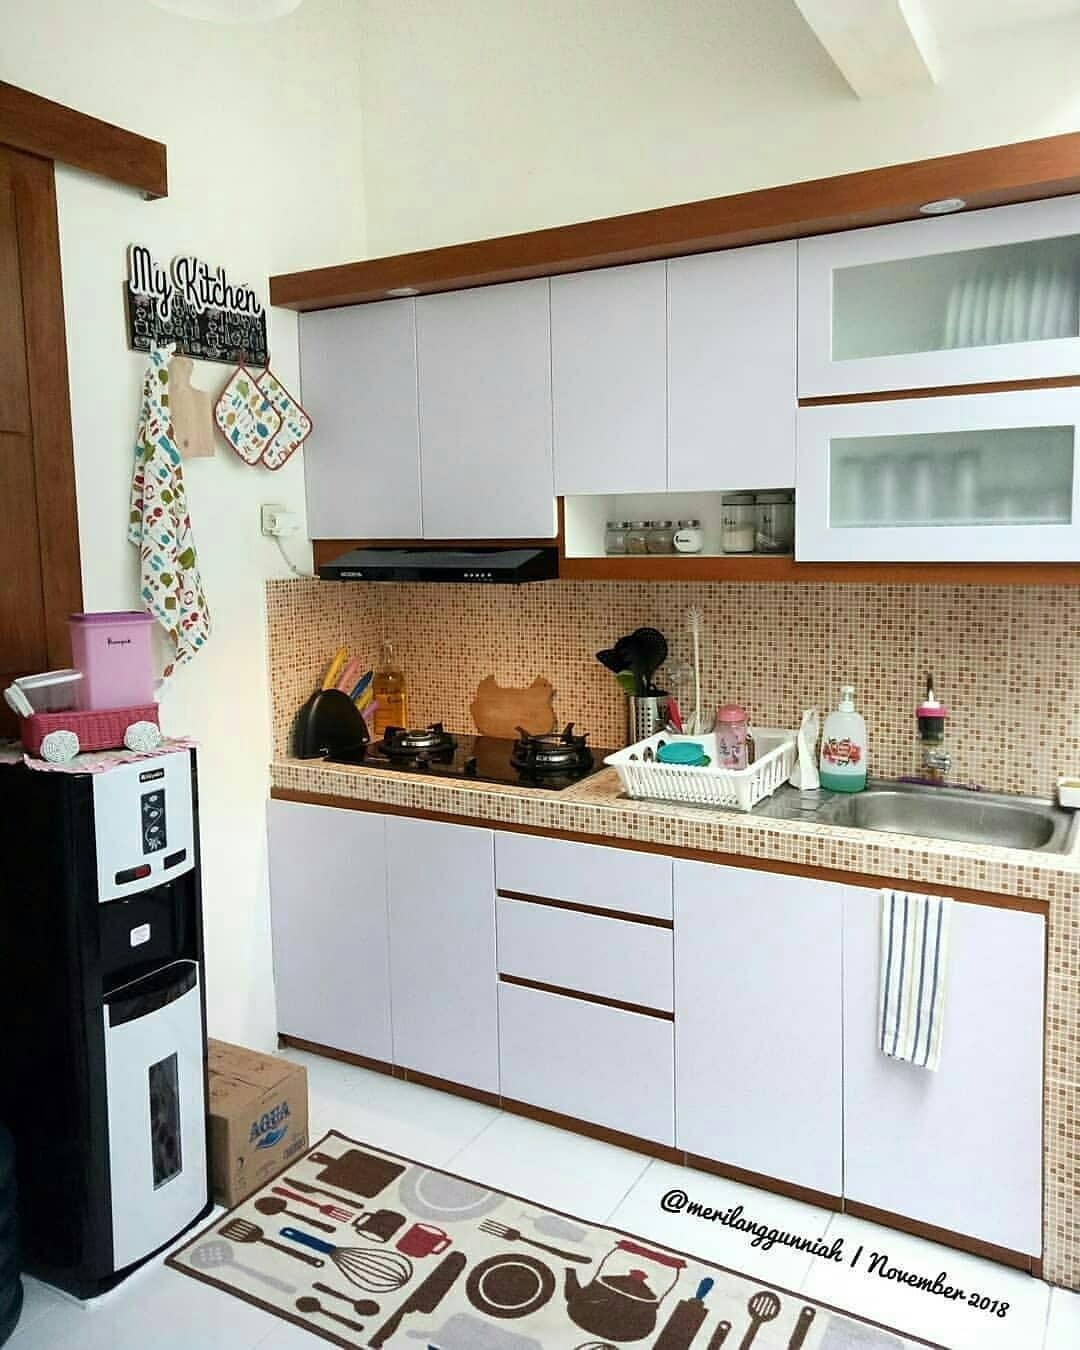 Ide Untuk Dapur Minimalis Modern Ukuran Kecil Agar Terlihat Rapi Desainer Interior Indonesia